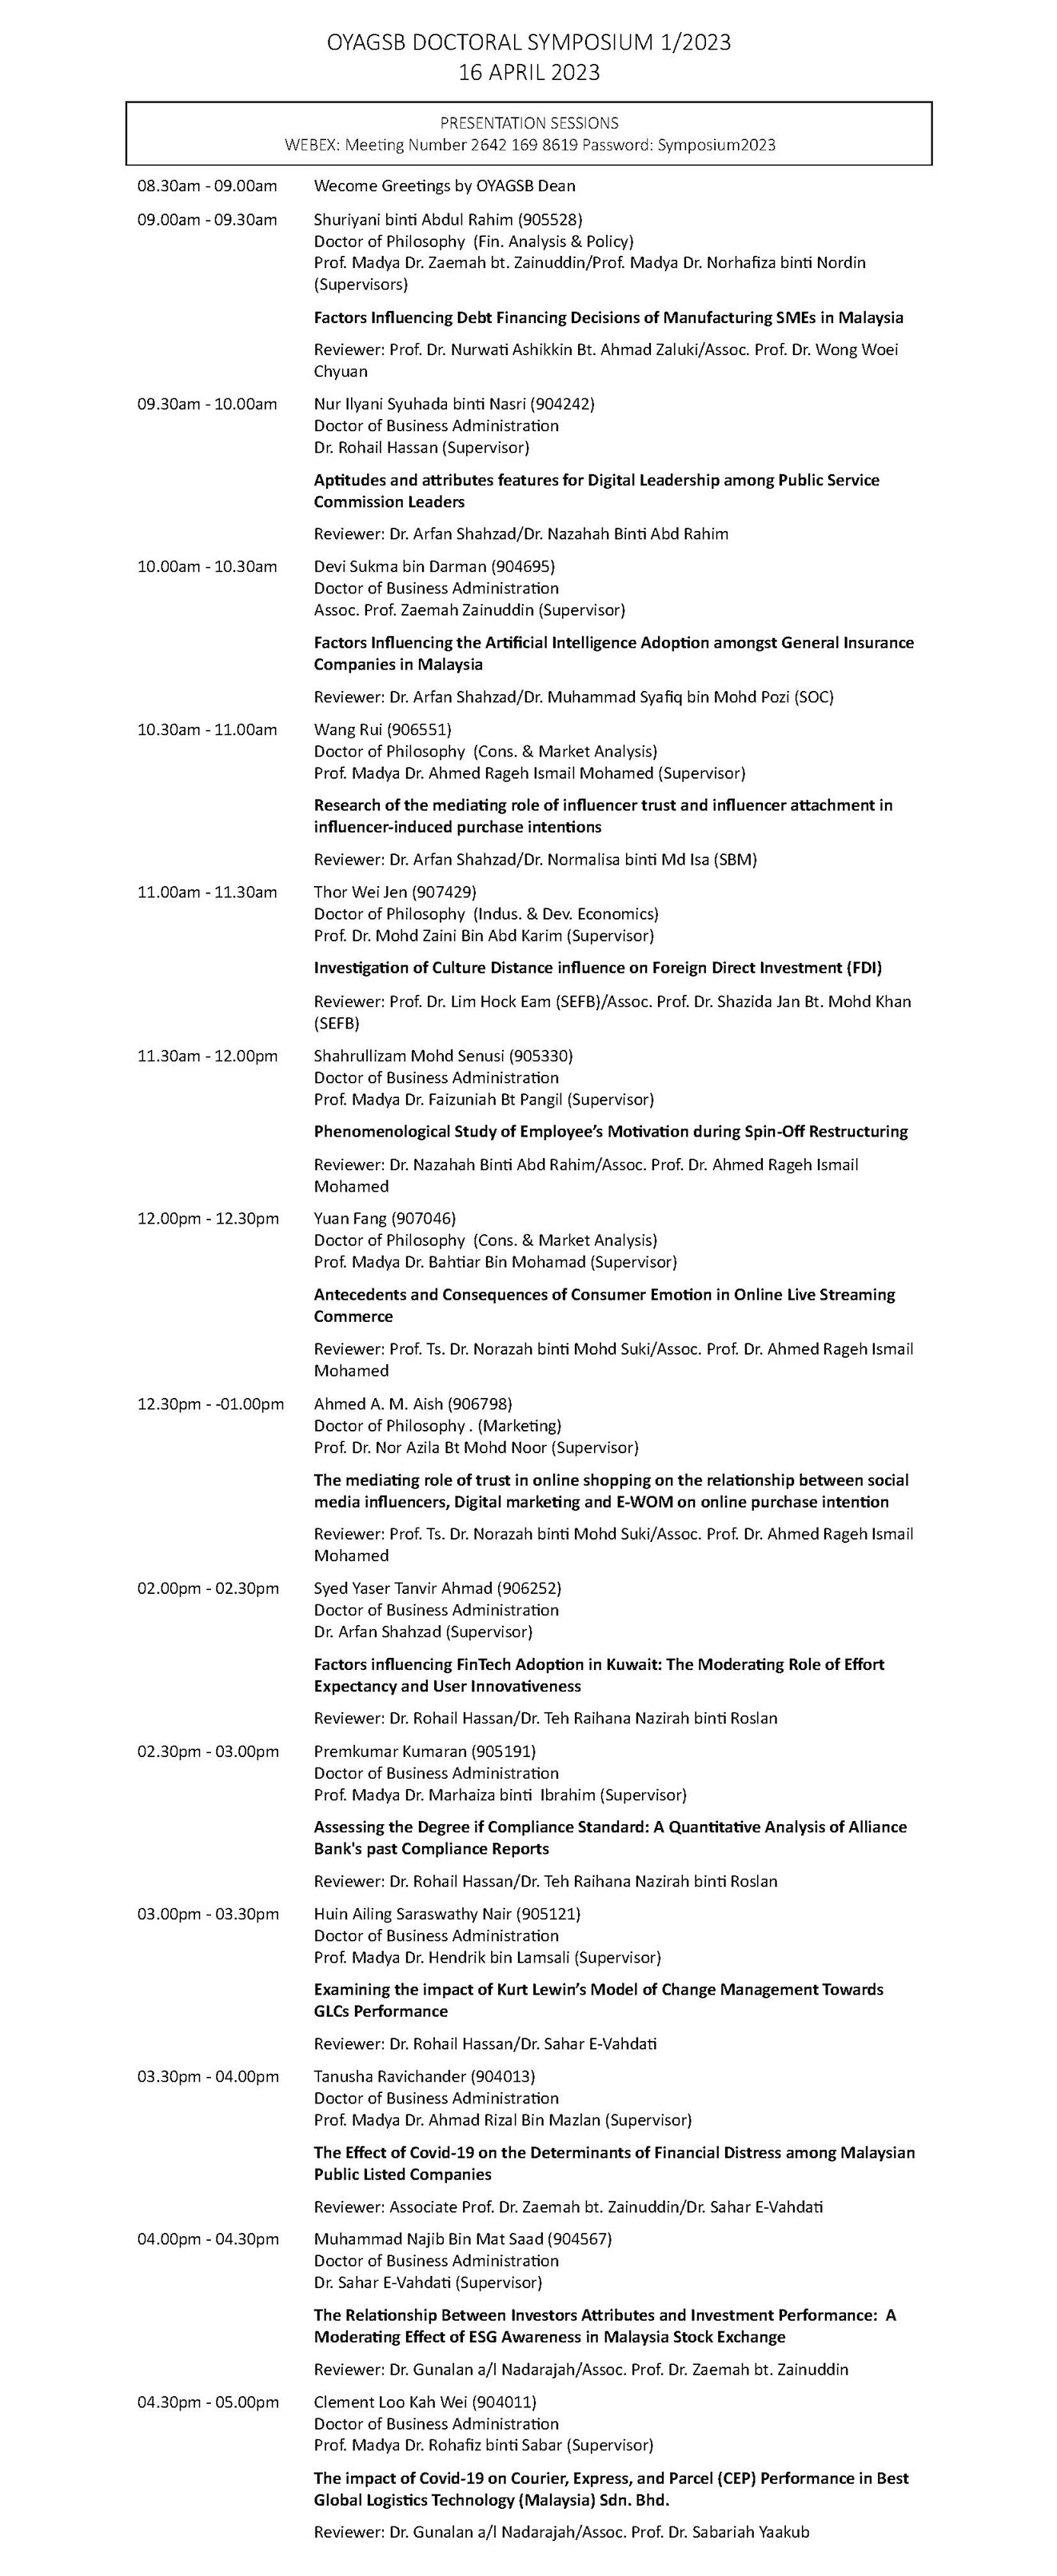 apr-2023-oyagsb_doctoral_symposium_1-2023_schedule_ver_2_page_2